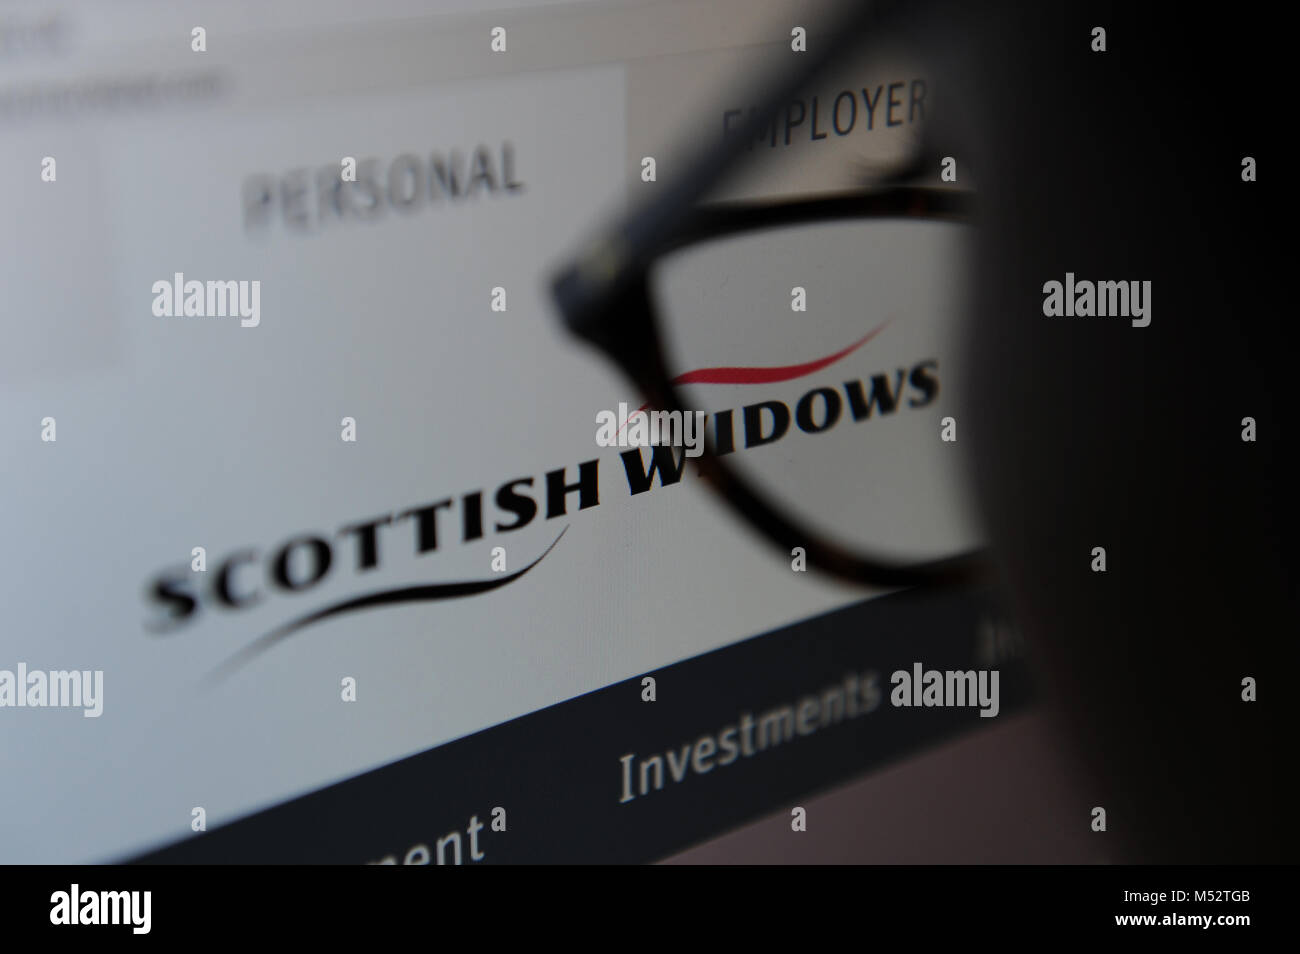 Scottish Widows Stock Photo